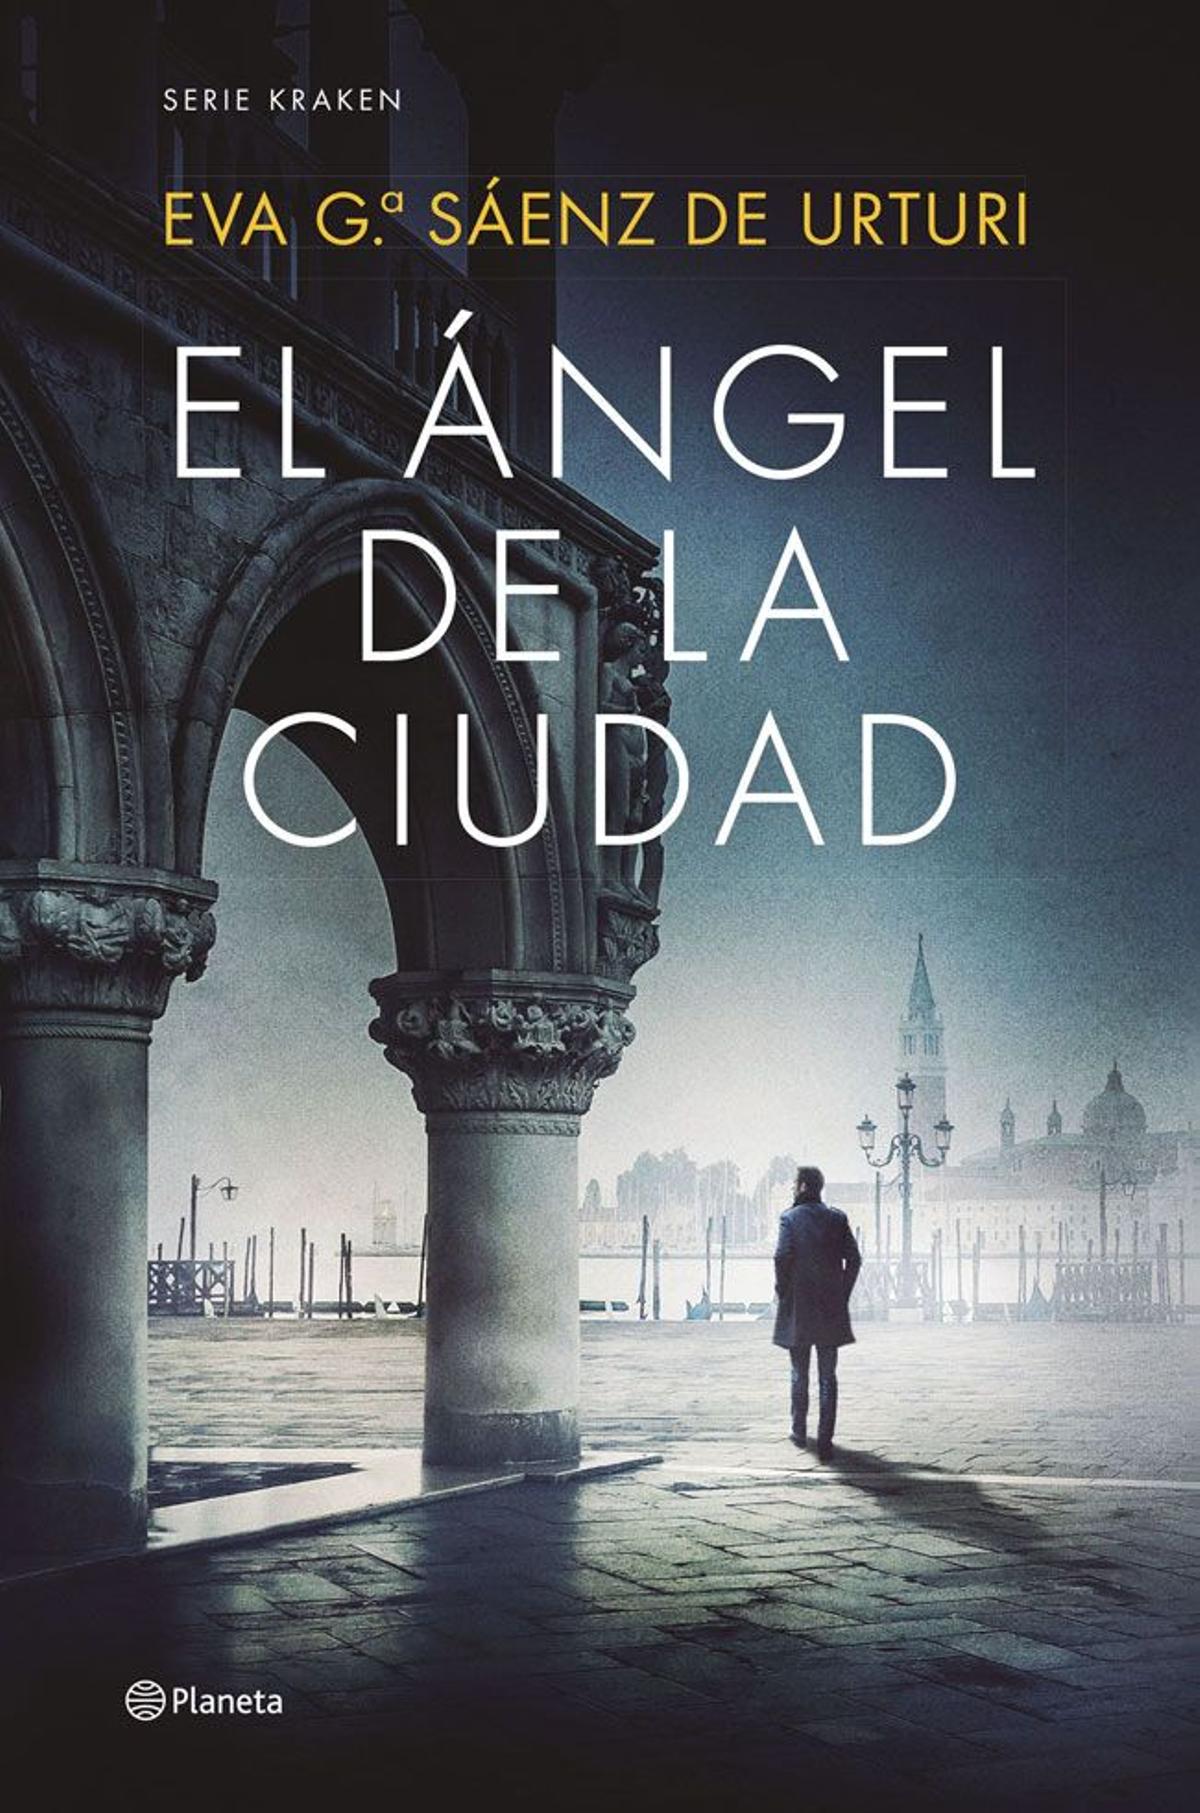 “El ángel de la ciudad”, de Eva García Sáenz de Urturi (Planeta)